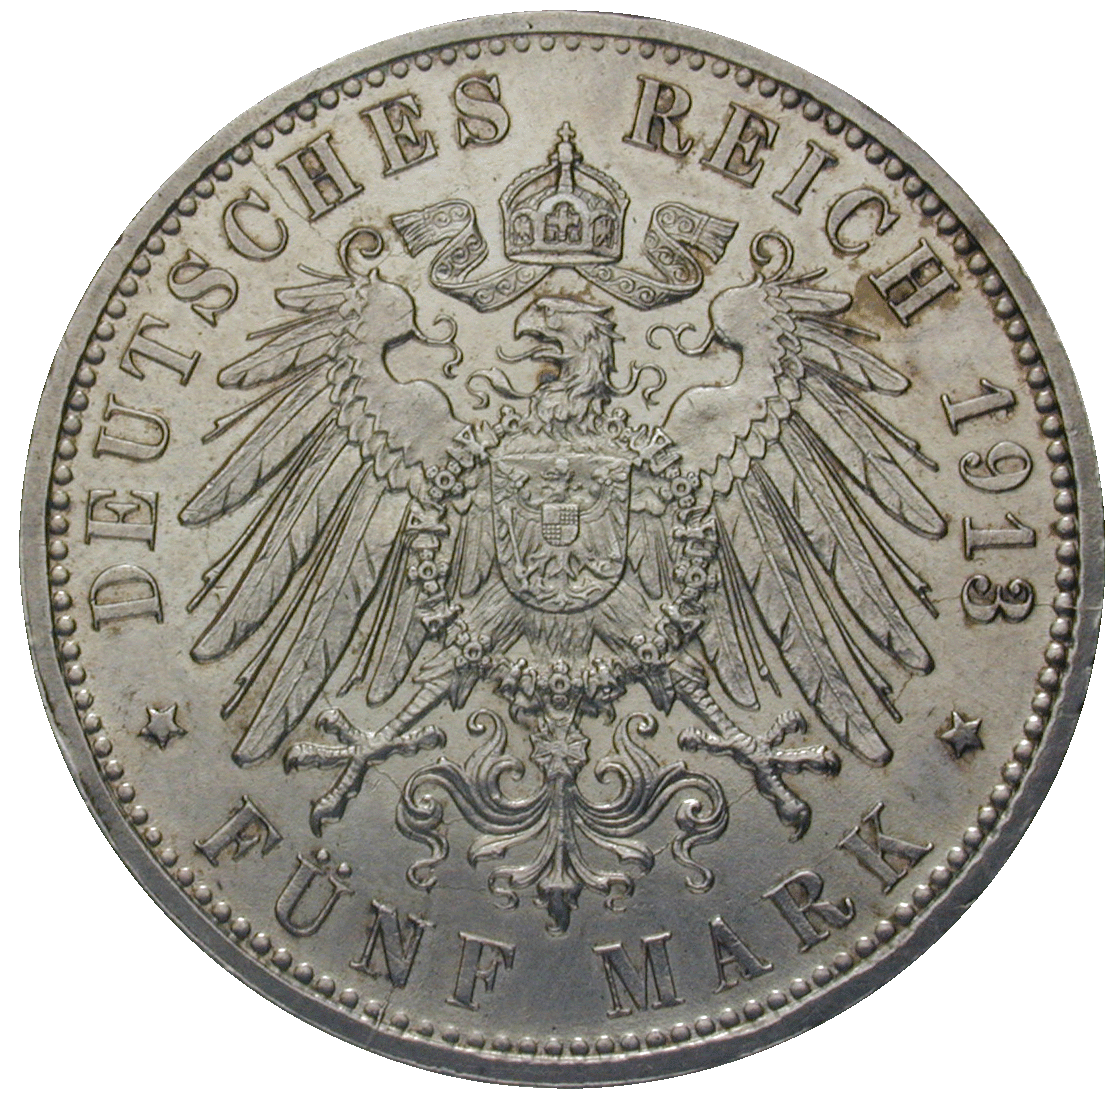 Deutsches Kaiserreich, Wilhelm II., Freie Hansestadt Hamburg, 5 Mark 1913 (reverse)